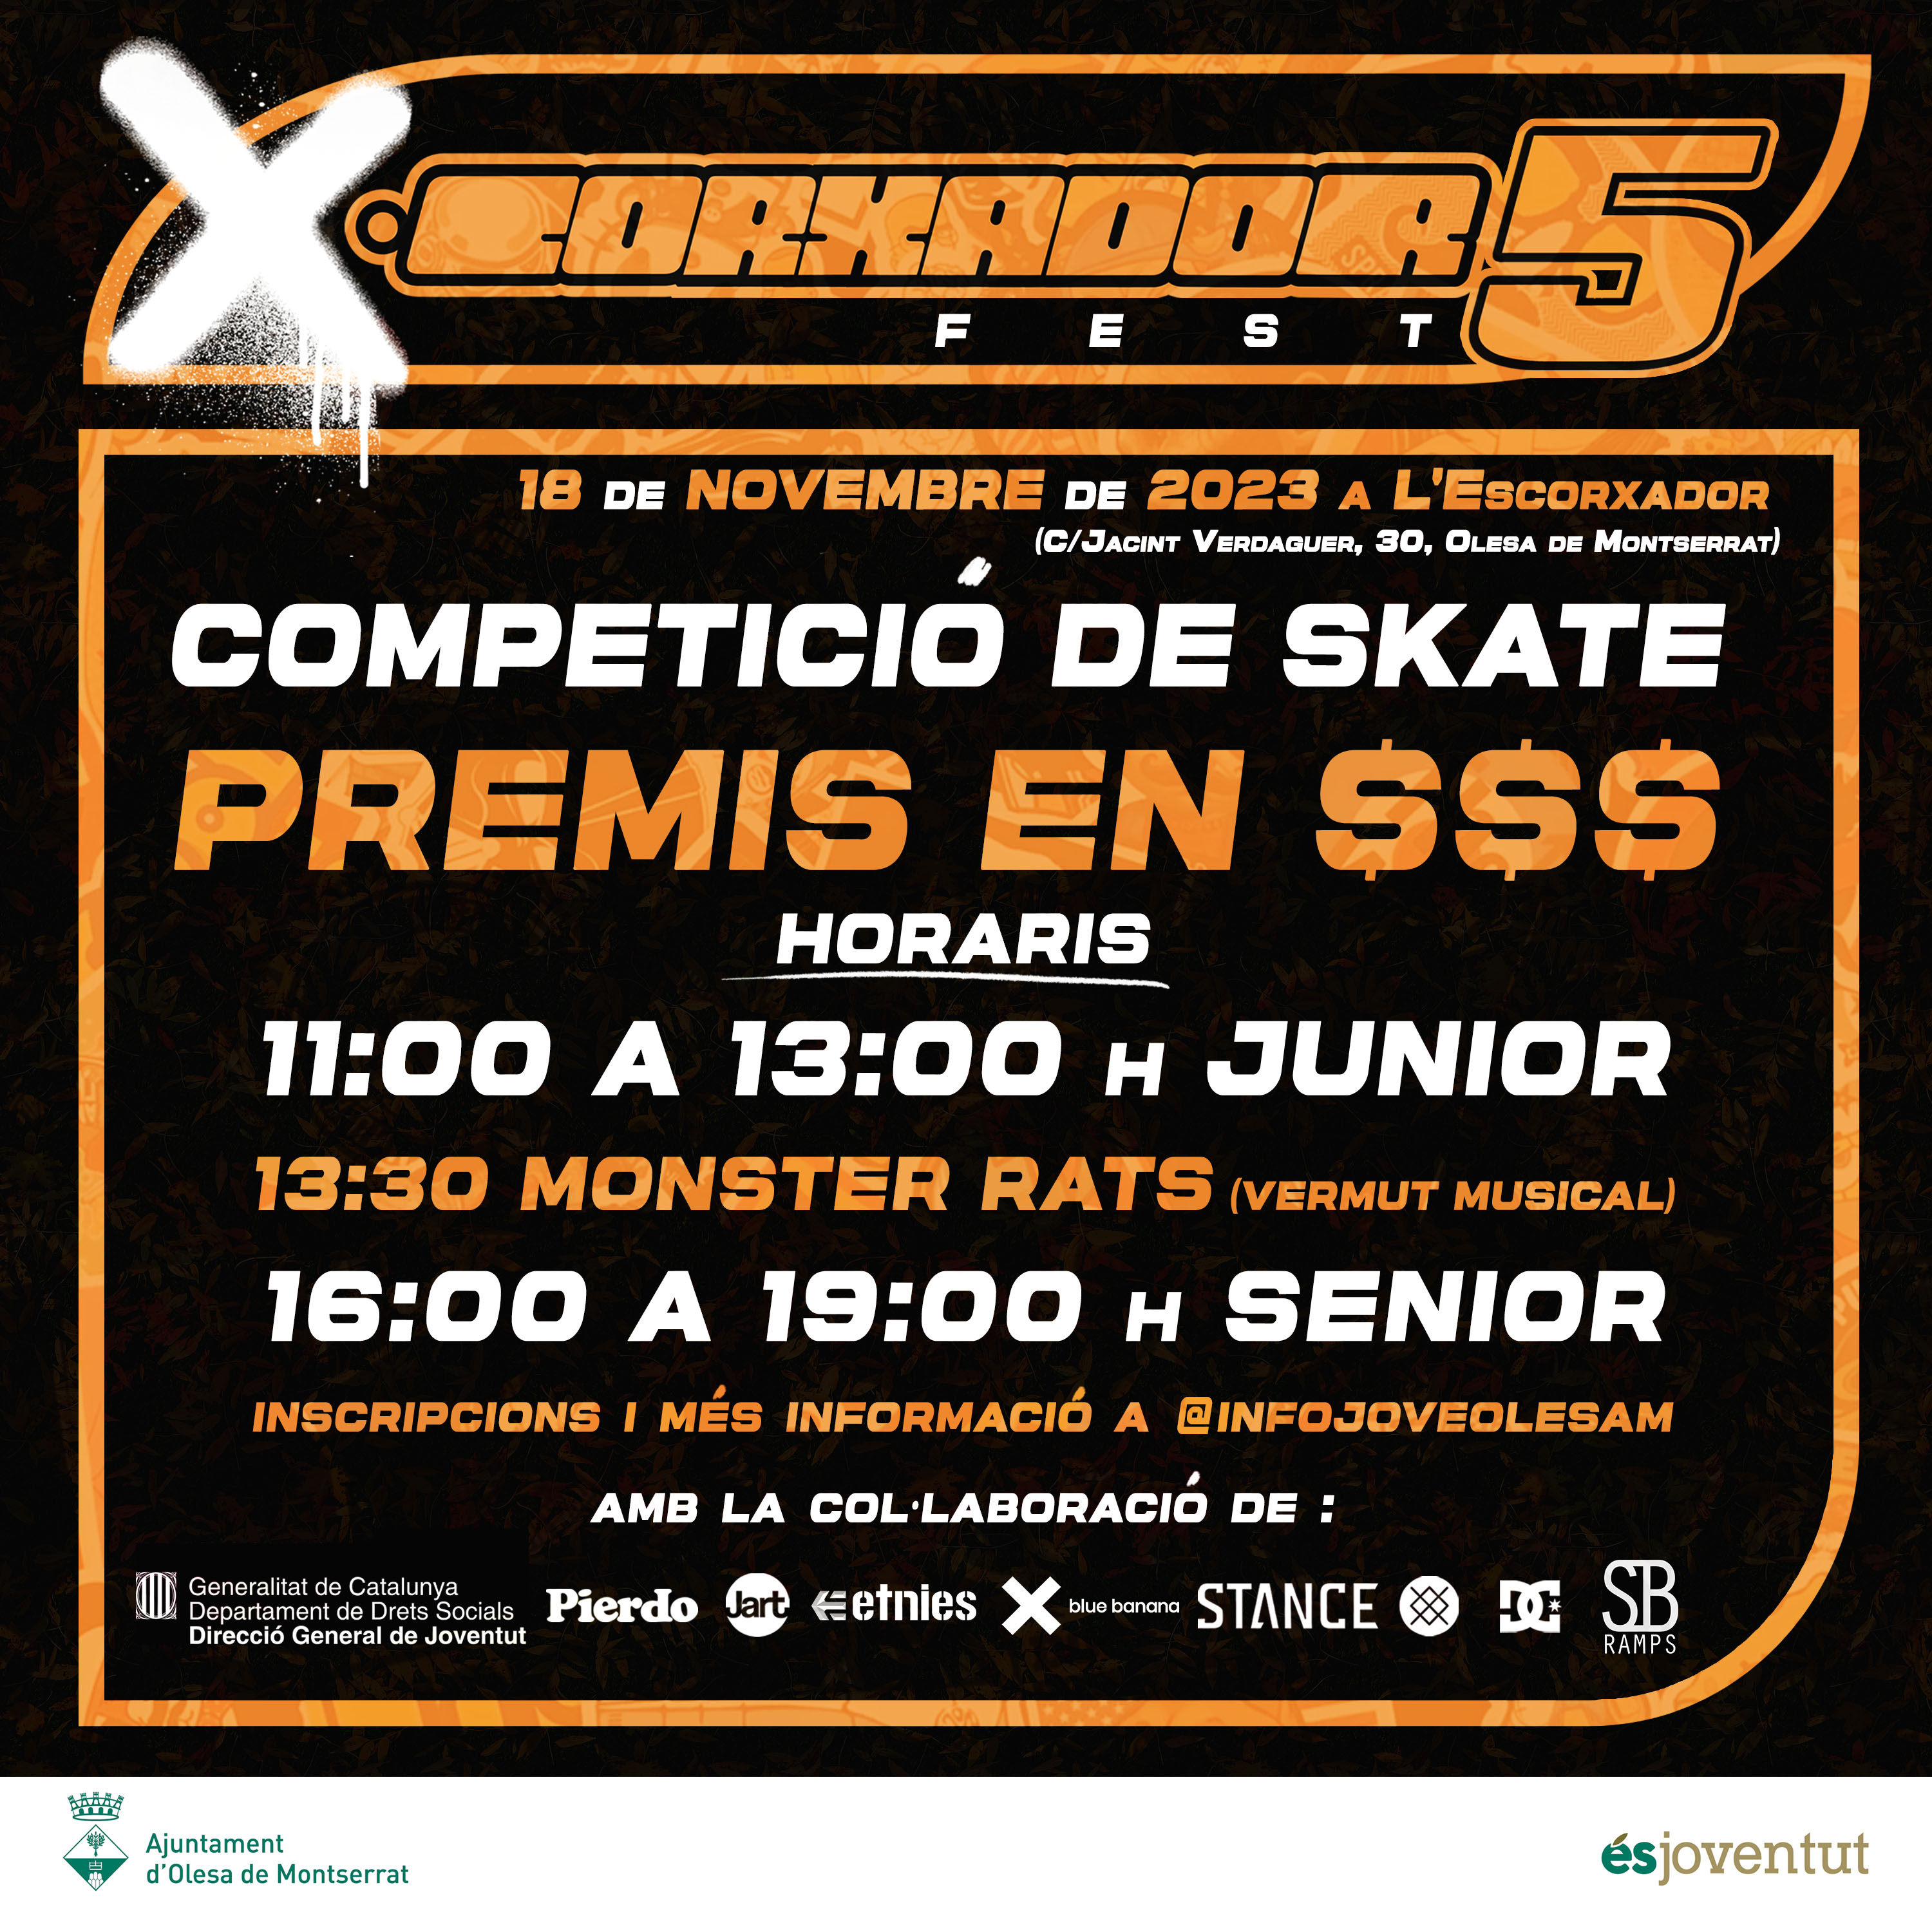 Cartell de la competició d'skate de l'Xcorxador Fest 5 2023